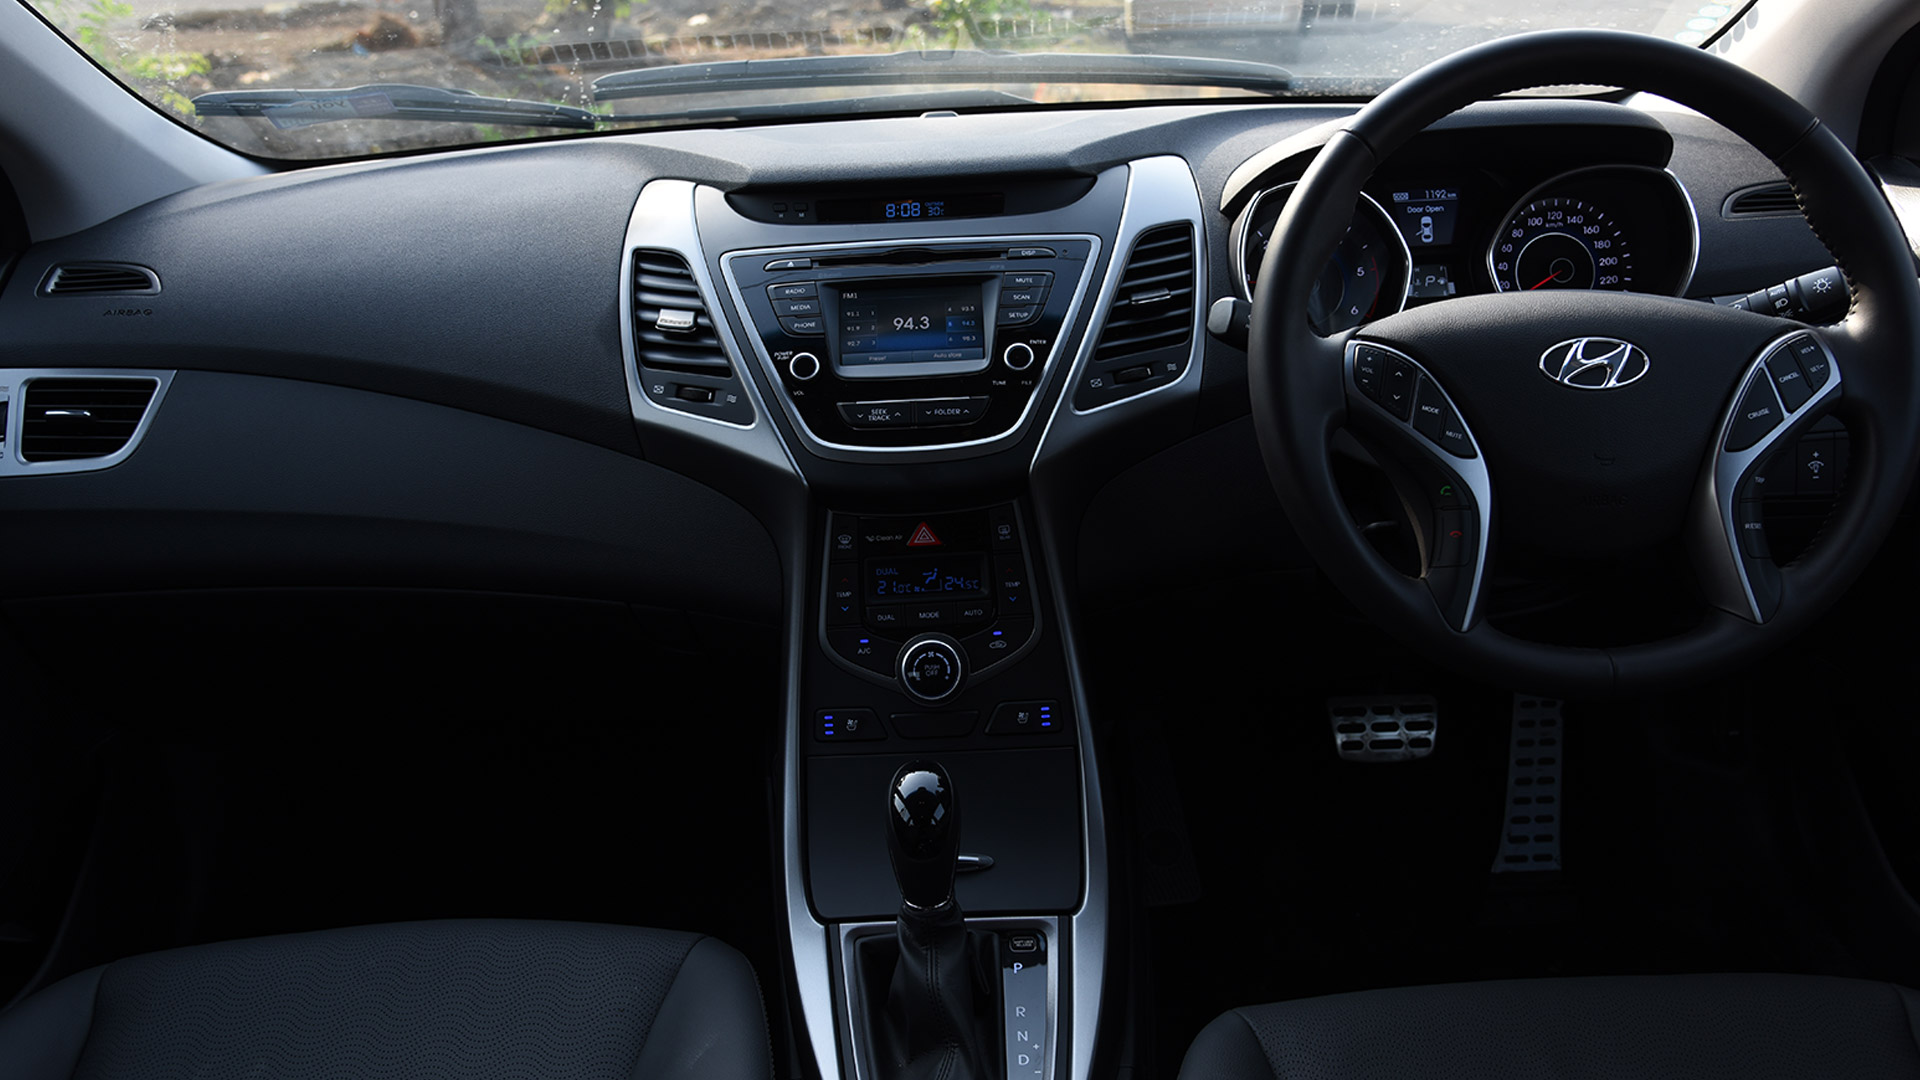 Hyundai Elantra 2015 Interior Car Photos Overdrive